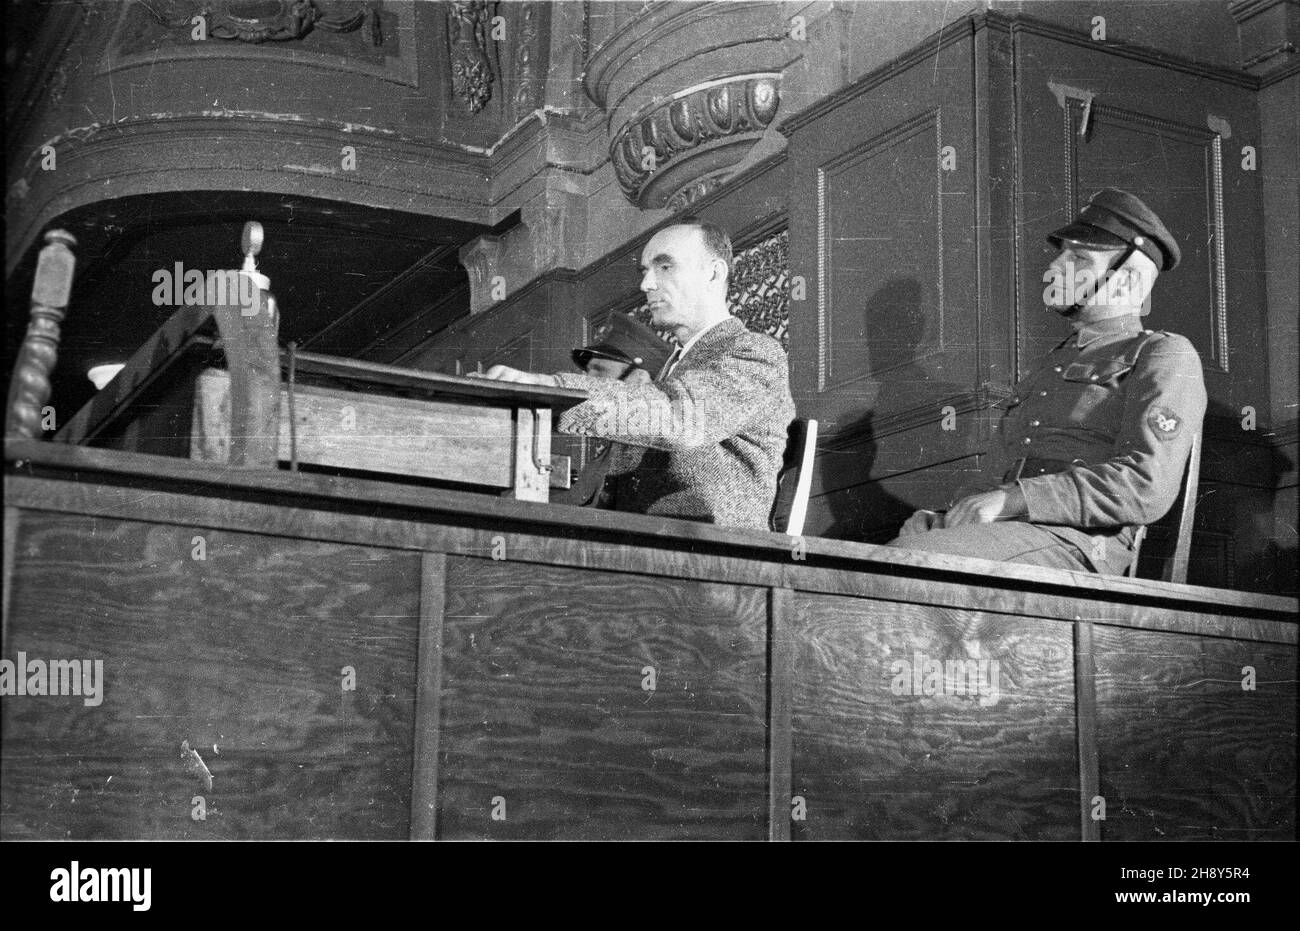 Poznañ, 1946-06-21. W auli Uniwersytetu Adama Mickiewicza rozpocz¹³ siê proces zbrodniarza hitlerowskiego, namiestnika tzw. Kraju Warty (Wartheland) Arthura Greisera. Proces zakoñczy³ siê 7 lipca 1946 roku skazaniem Greisera na œmieræ. Wyrok wykonano 14 lipca 1946 roku. Nz. Arthur Greiser (L)  pw  PAP/J. ¯yszkowski      Poznan, June 21, 1946. A trial of Nazi murderer, Wartheland governor, Arthur Greiser began at a lecture theatre of Adam Mickiewicz University. The trail ended on 7 July 1946. Greiser was sentenced to death and executed on 14 July 1946. Pictured: Arthur Greiser (L)   pw  PAP/J. Stock Photo